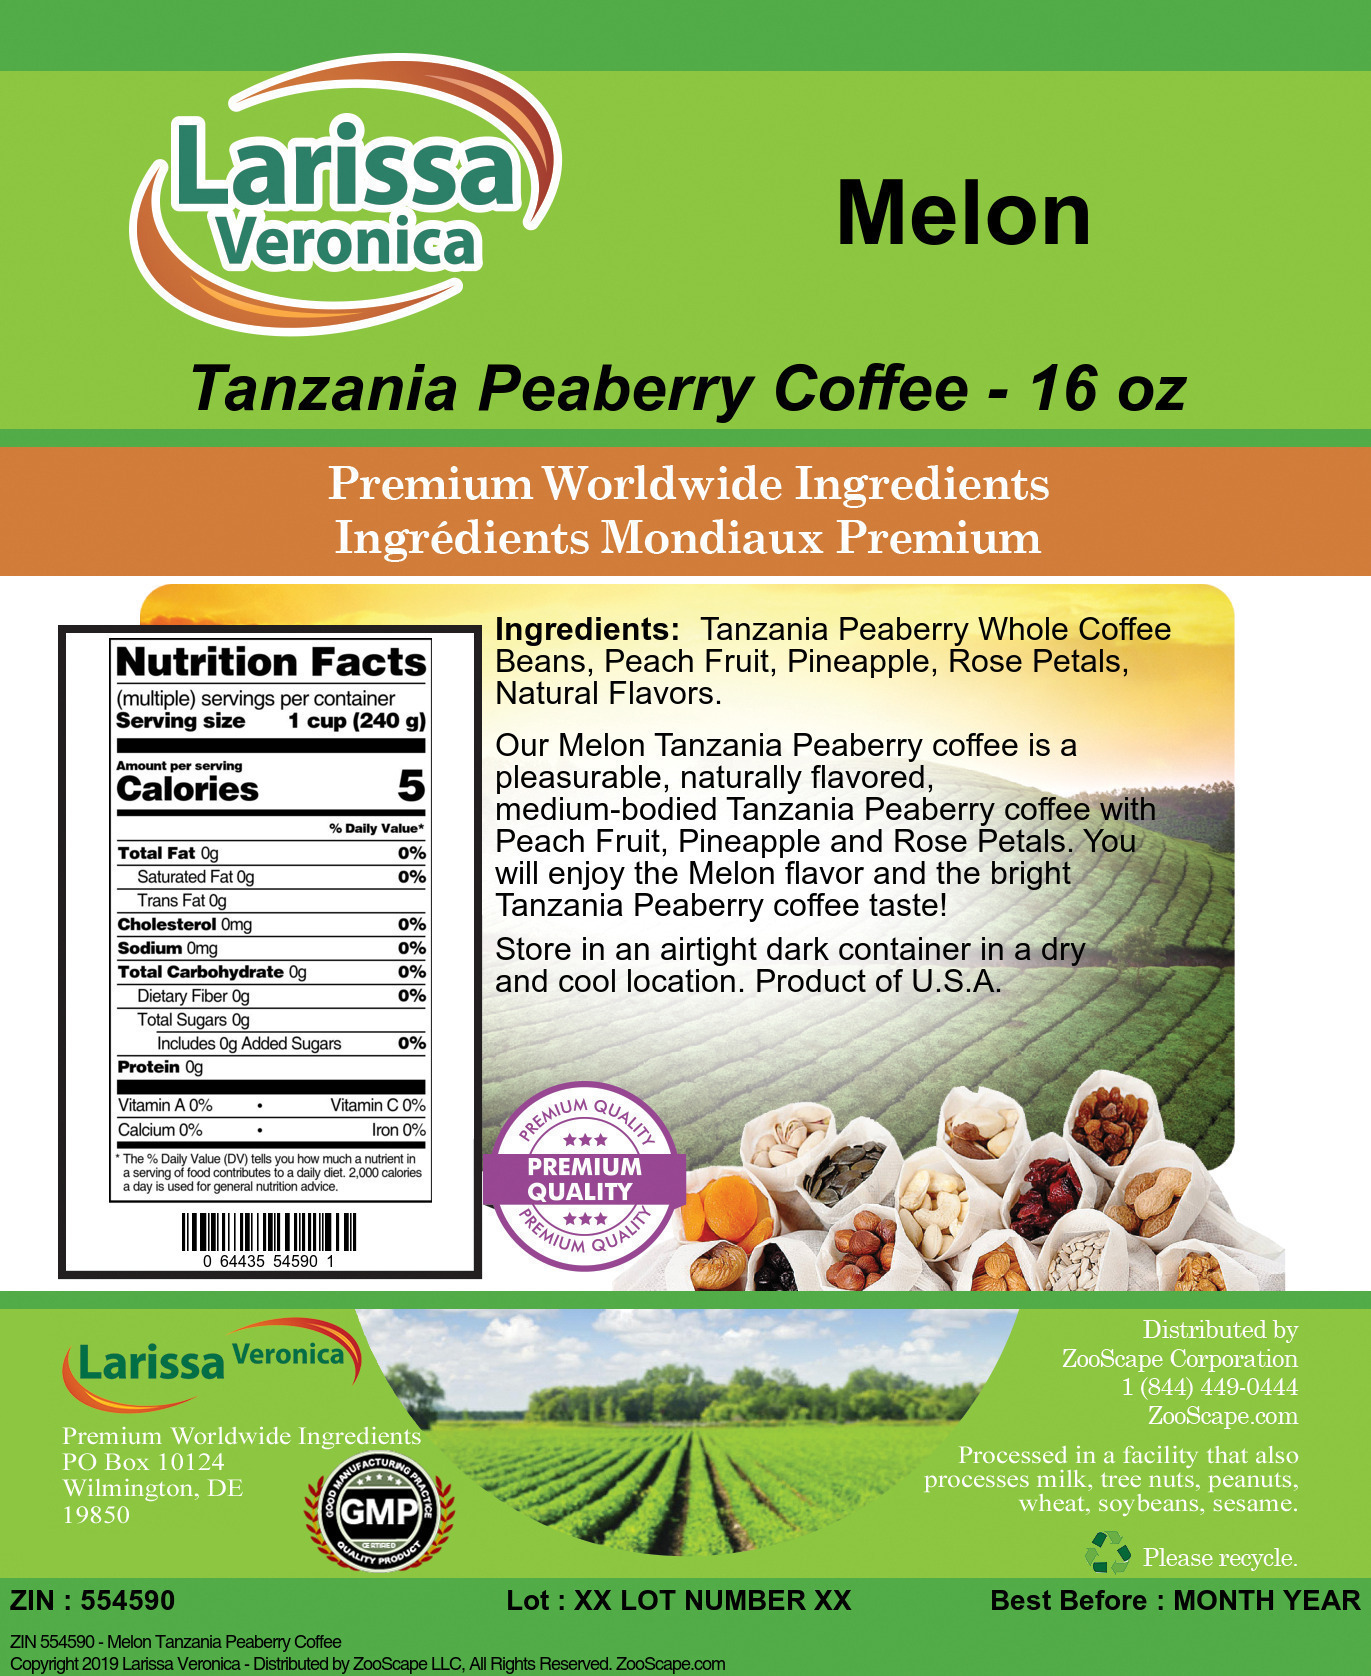 Melon Tanzania Peaberry Coffee - Label